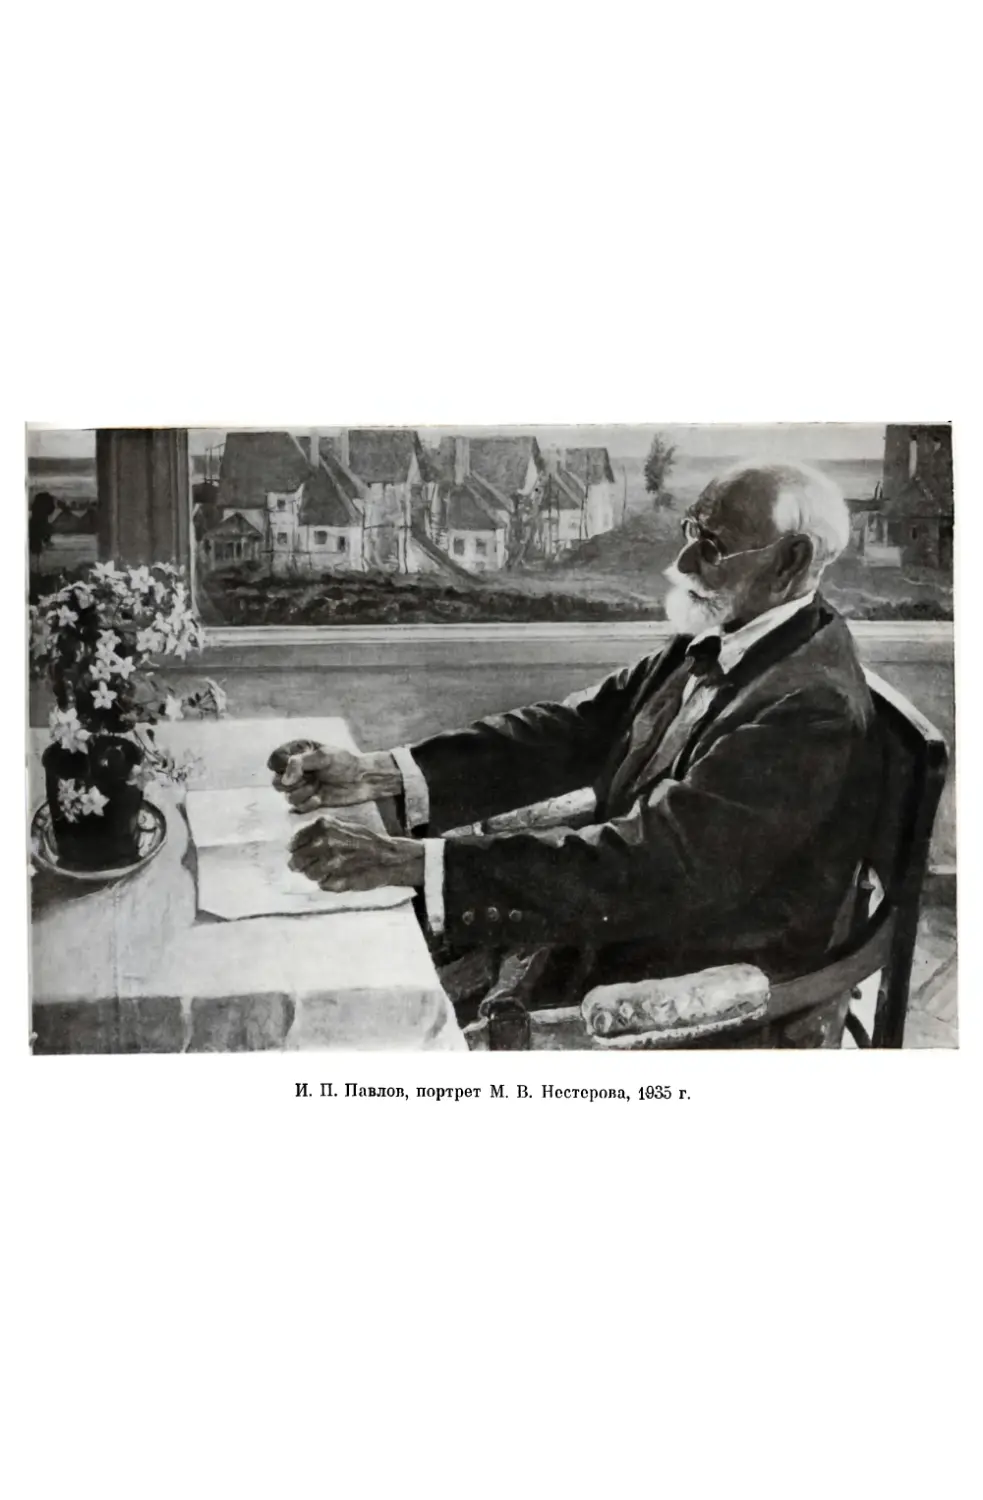 Вклейка. И. П. Павлов. Портрет М. В. Нестерова, 1935 г.